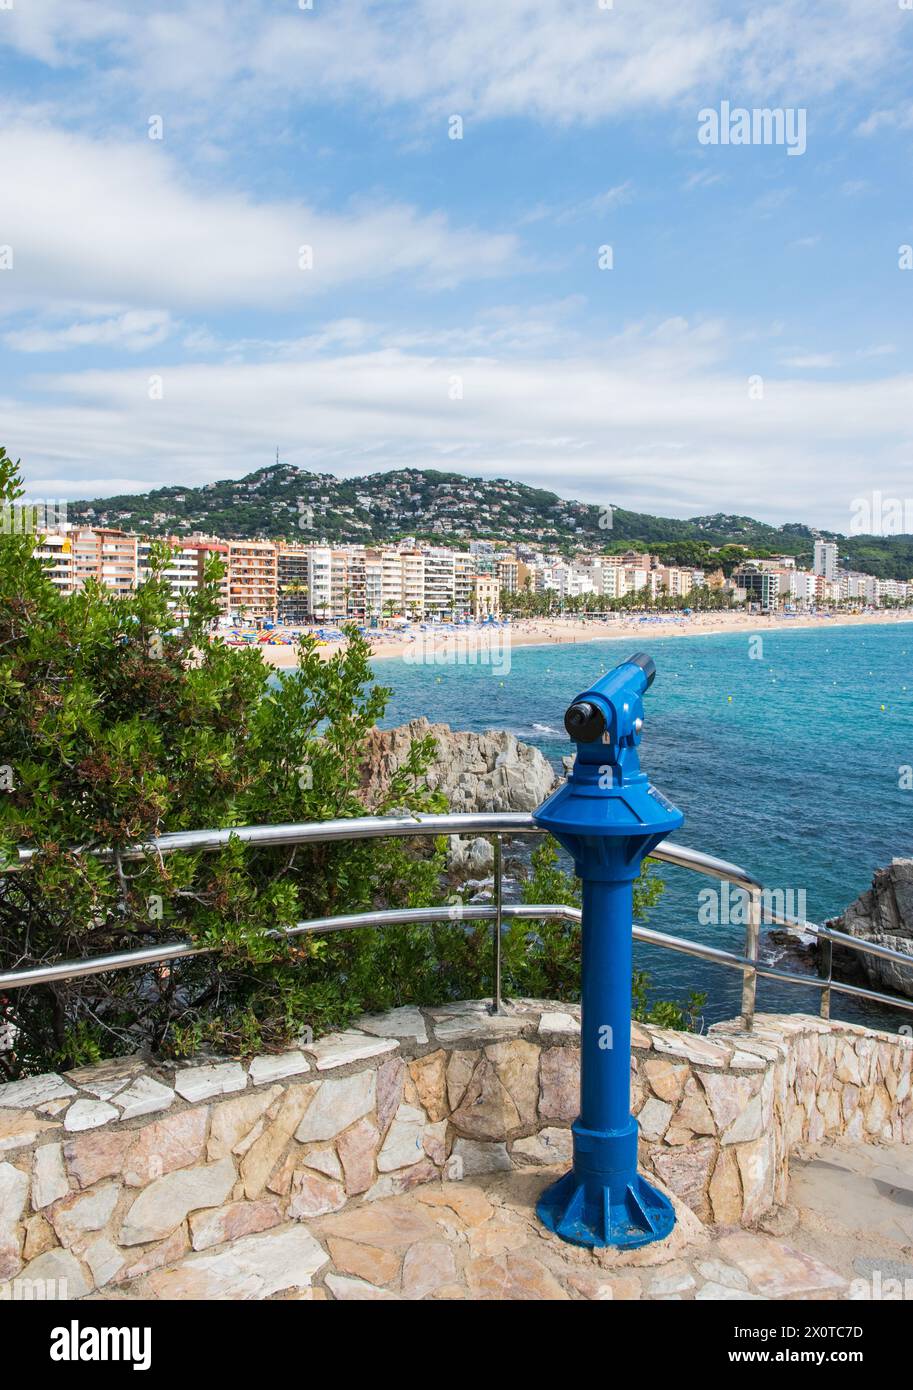 Hotels und Strand auf der Insel mit Teleskop, Meer, Palmen, Café, Menschen an der Meeresküste. Panoramaansicht der sealine in Spanien. Stockfoto